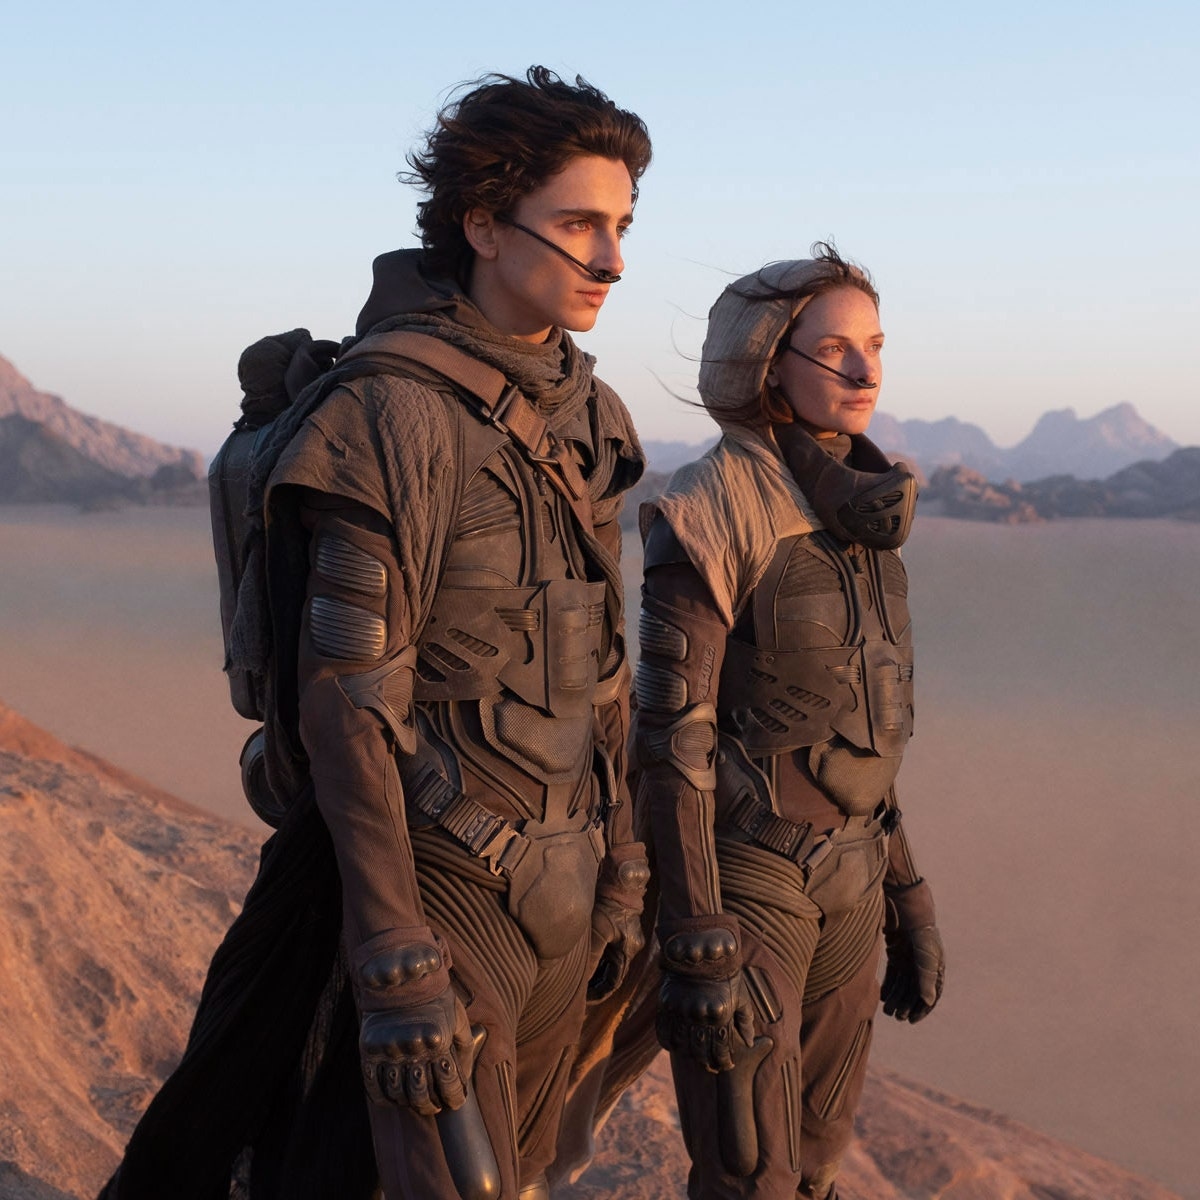 Bom tấn "Dune" không giúp Hollywood lấy lại vị thế ở Trung Quốc